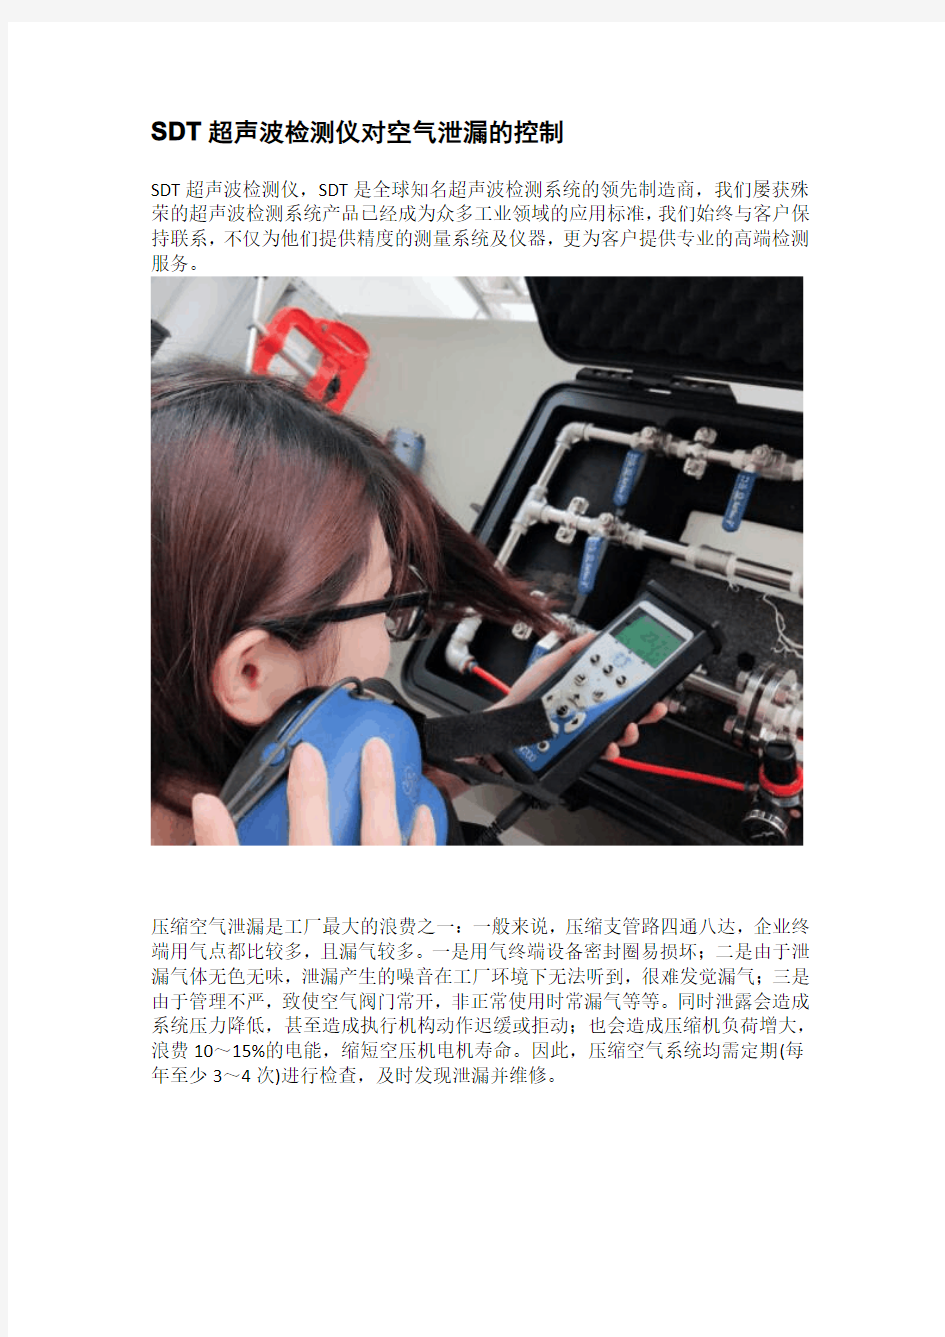 SDT超声波检测仪对空气泄漏的控制